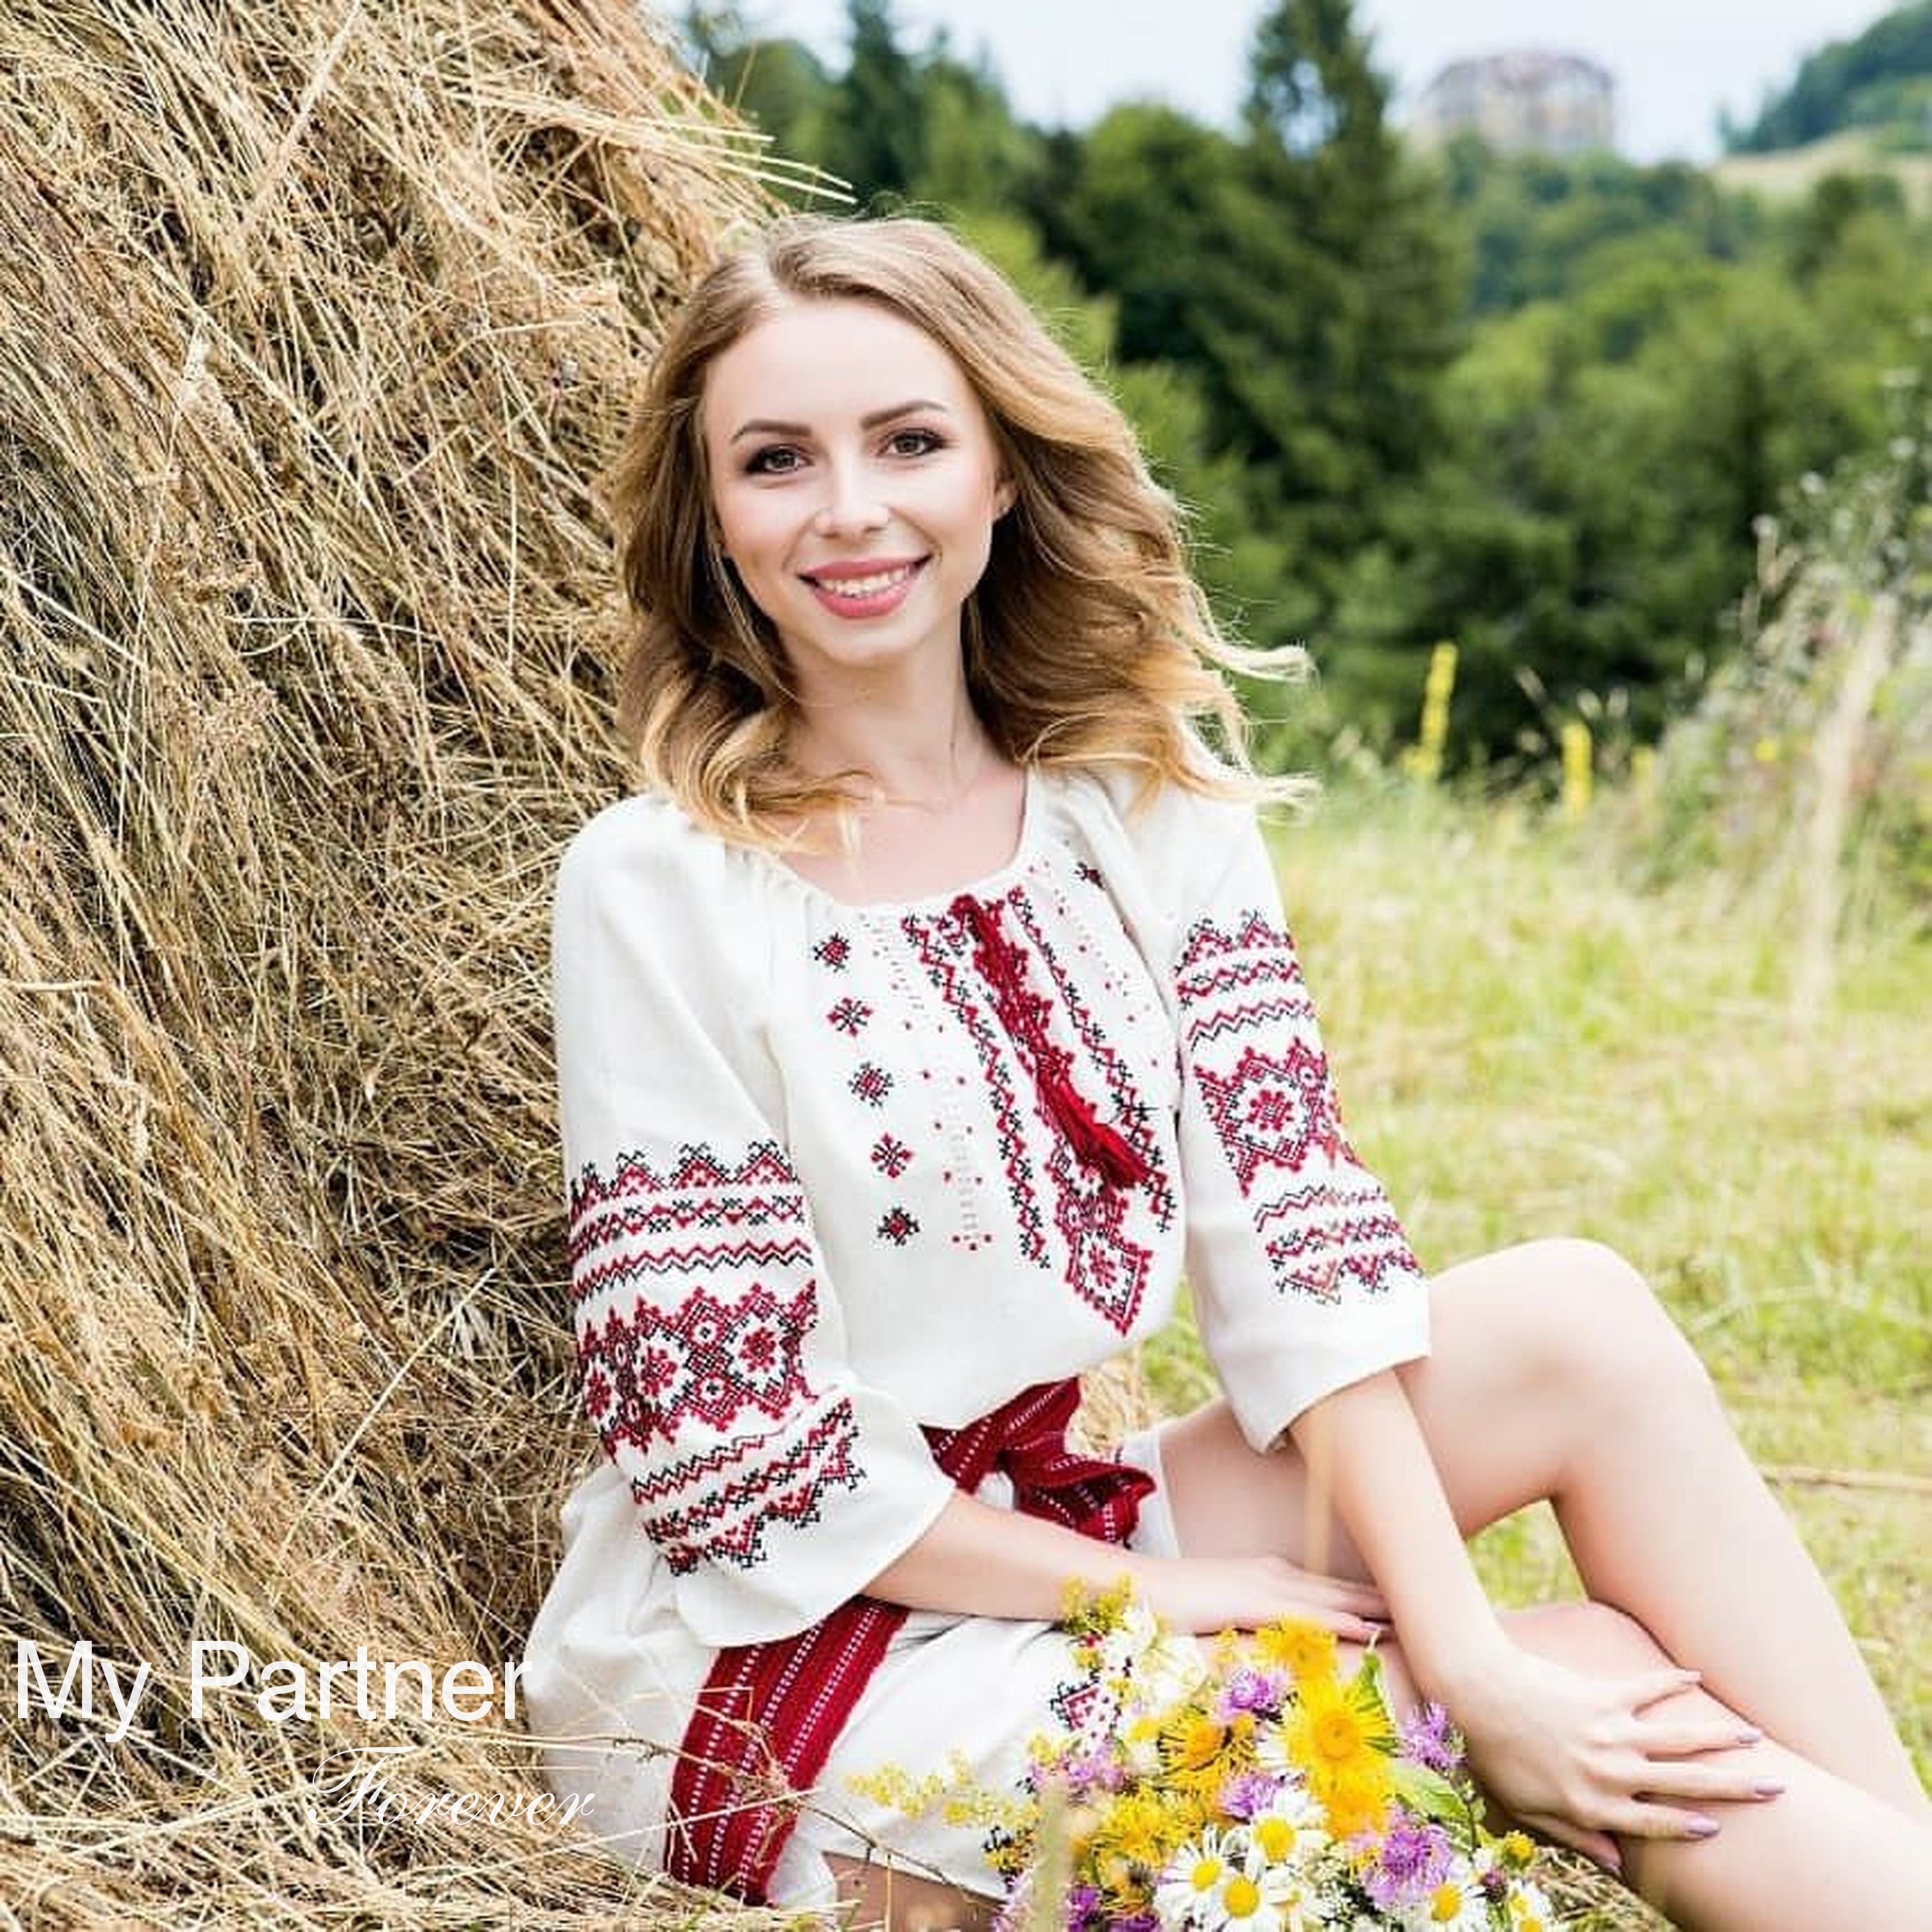 Datingsite to Meet Charming Ukrainian Girl Viktoriya from Kiev, Ukraine